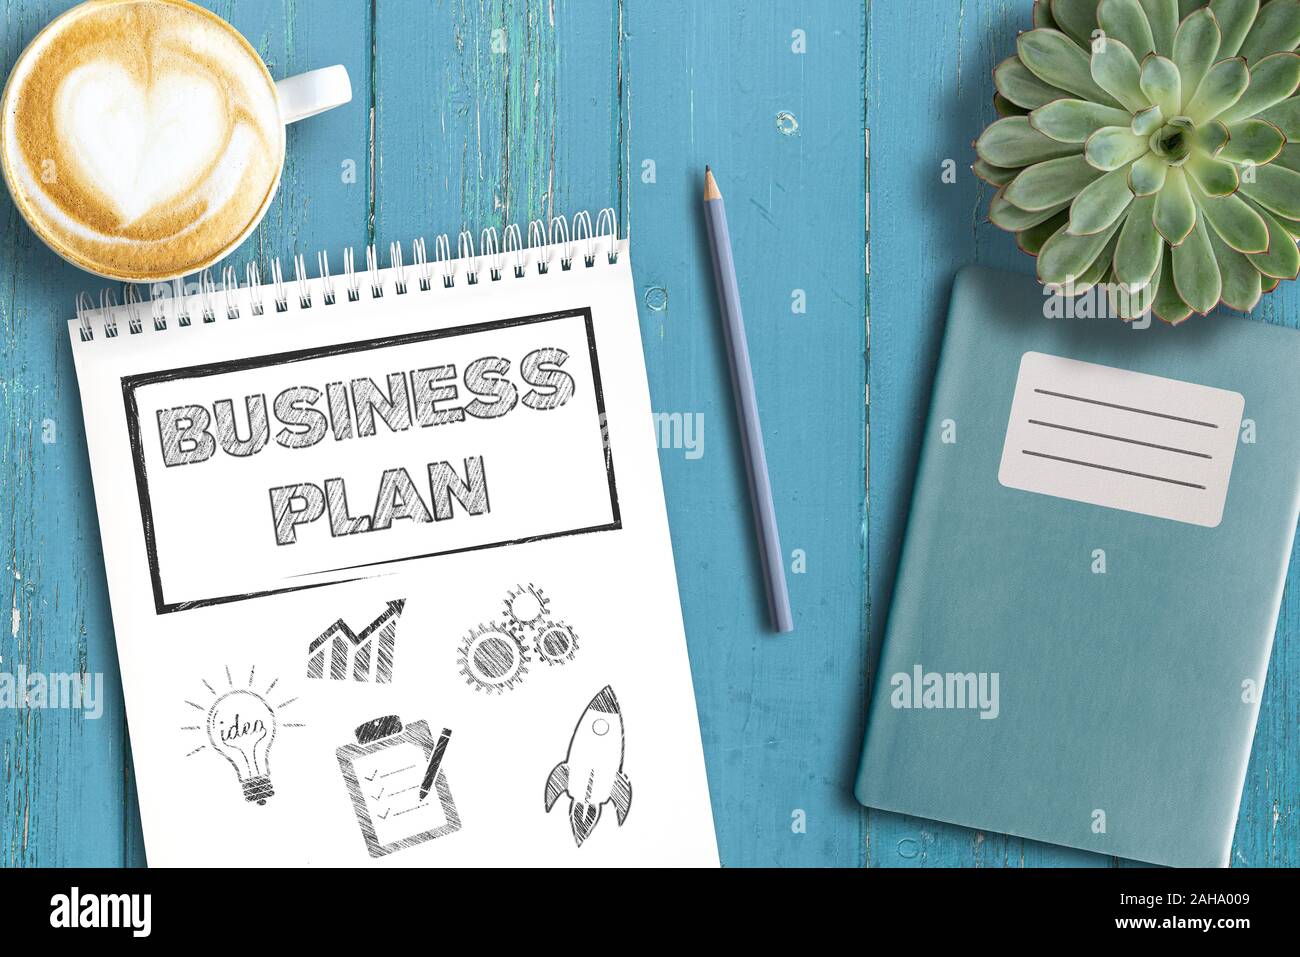 Strategia di business concetto, vista dall'alto del business plan sul blocco note su tavola in legno rustico Foto Stock